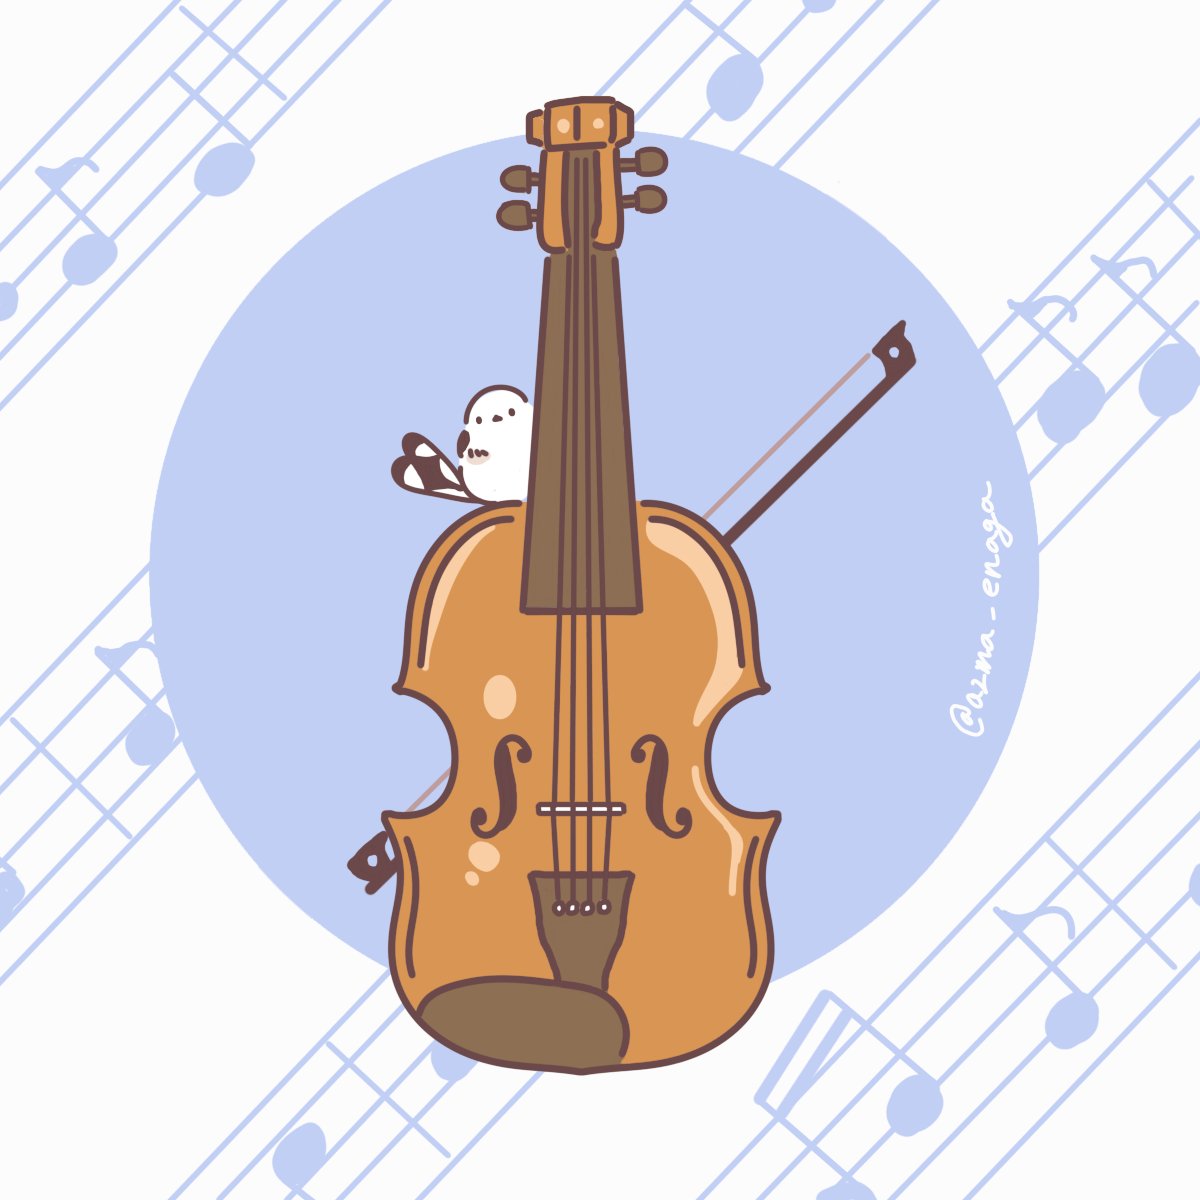 イオリ お題箱から楽器シリーズを バイオリン ユーフォニアム コントラバス ファ 吾妻まいか 11 28 12 25 Postcard Exhibitionのイラスト